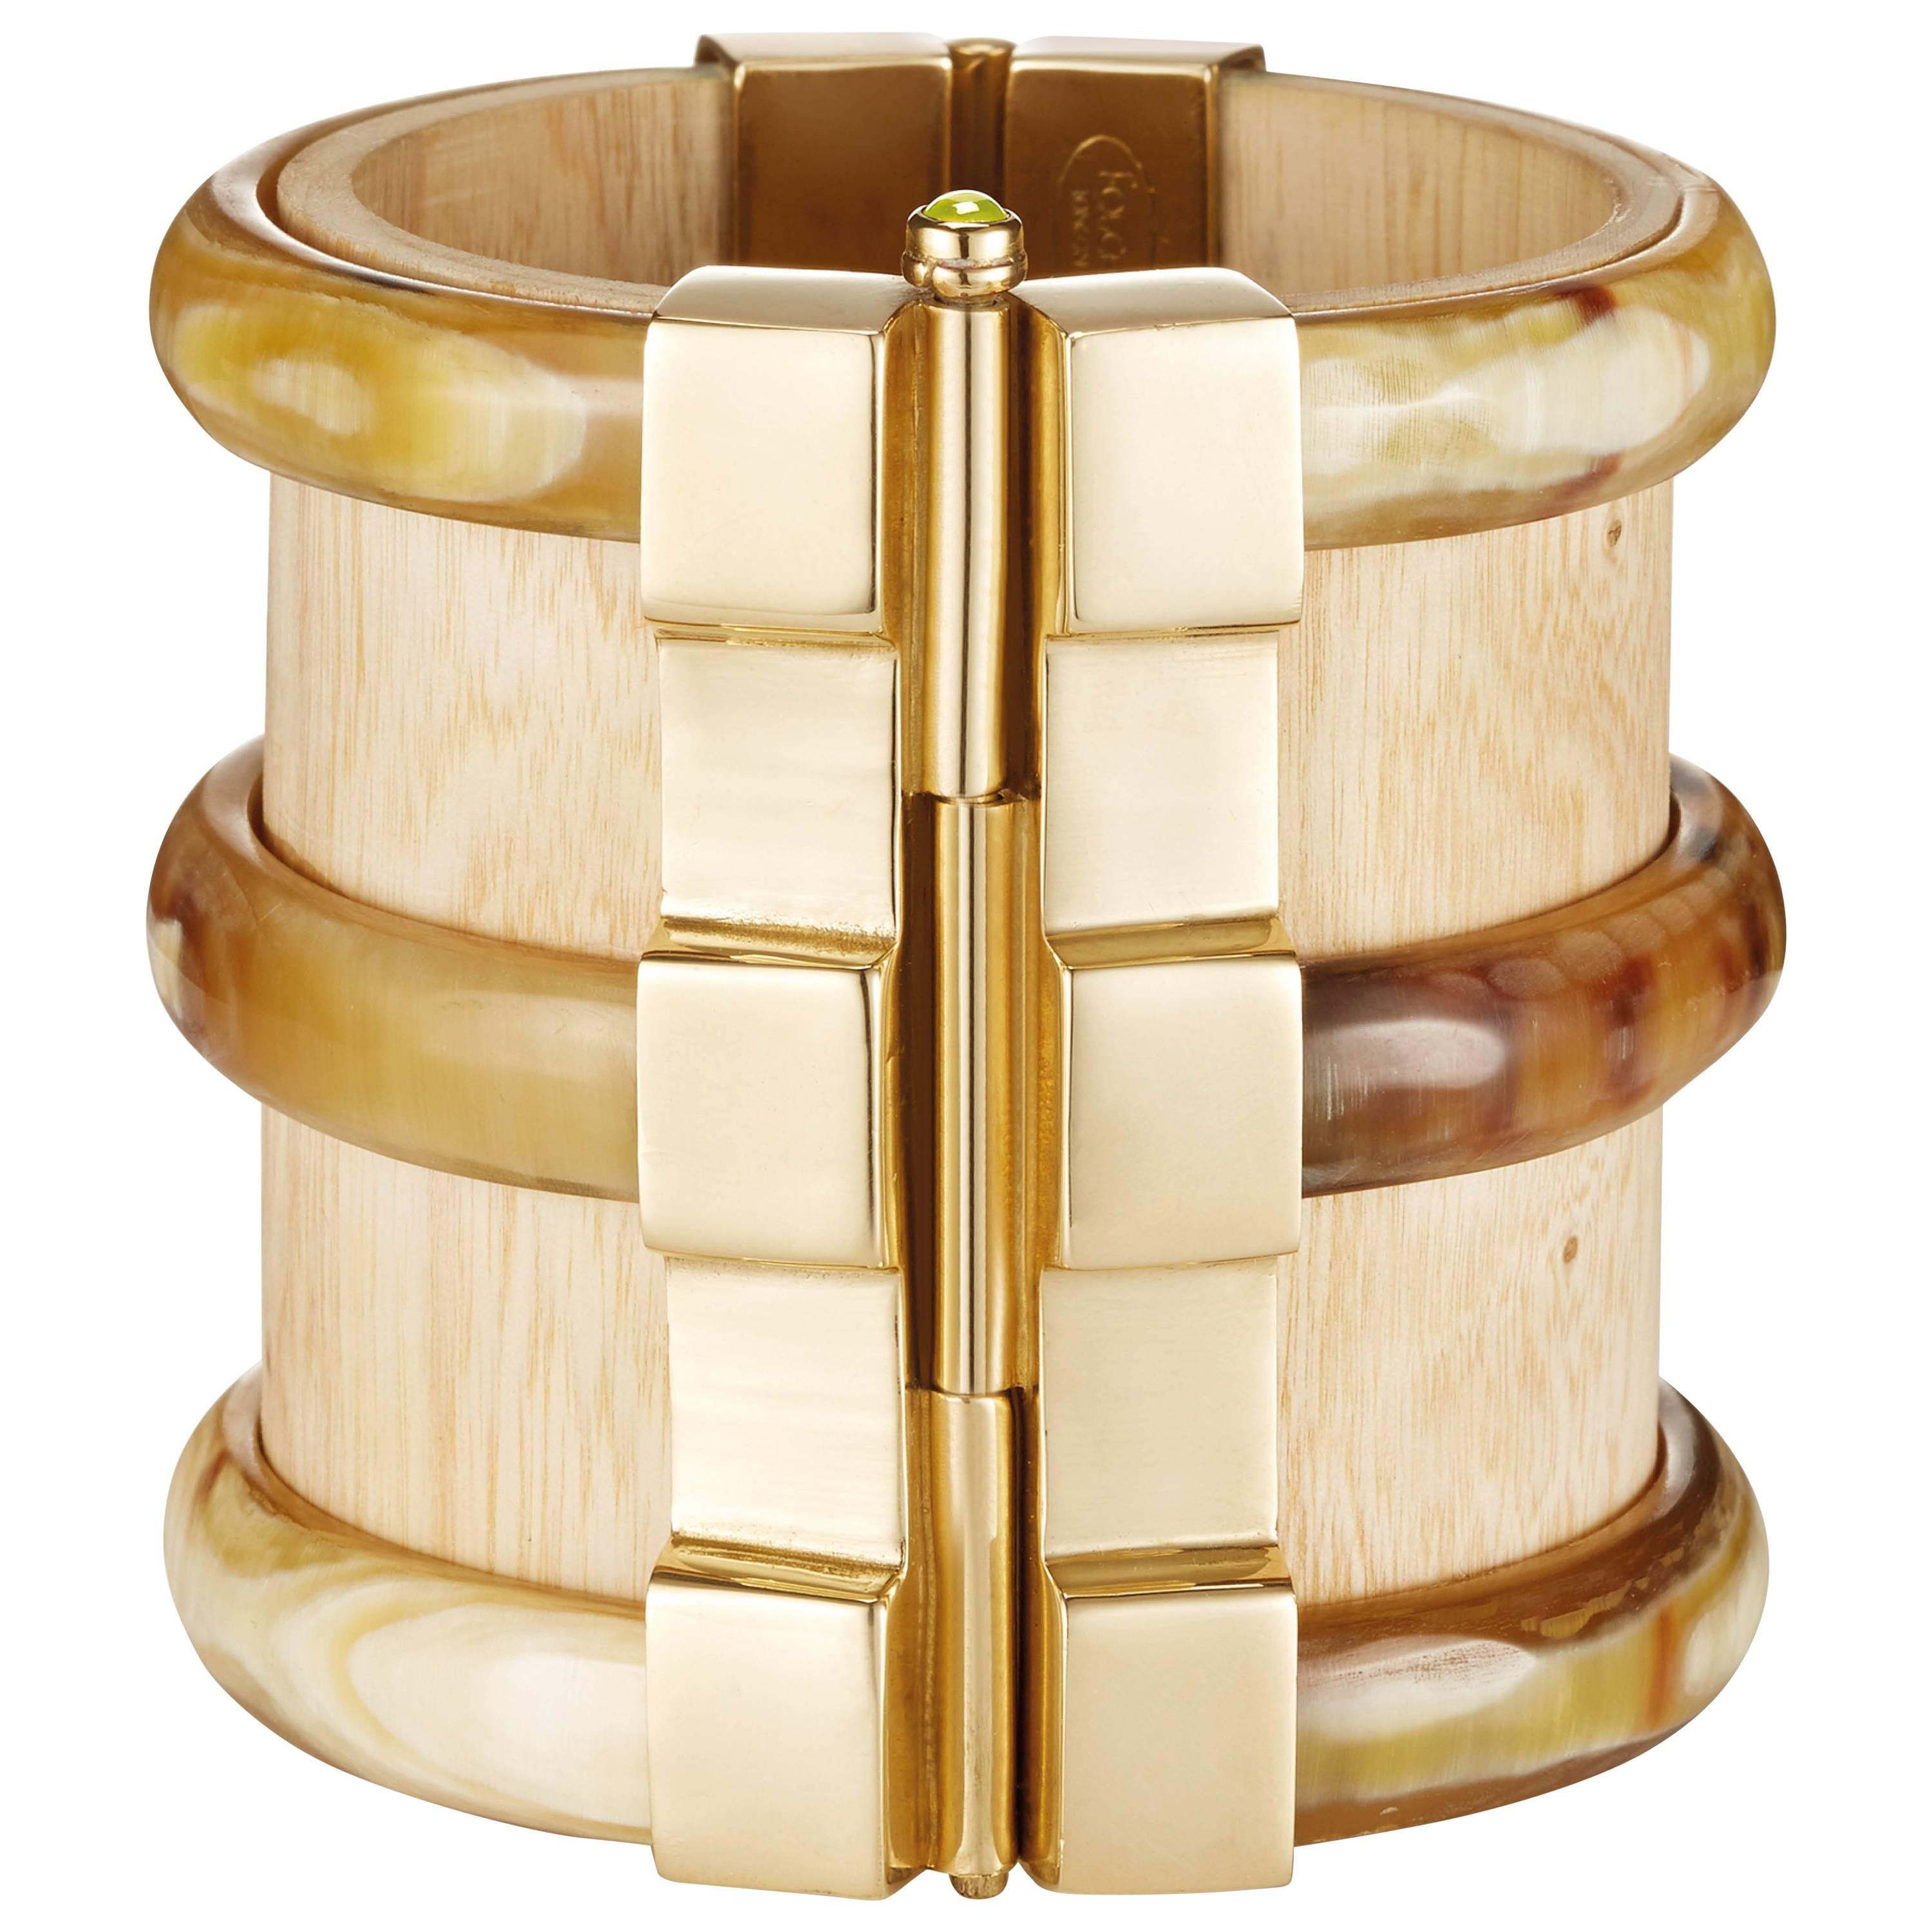 Fouche Bespoke Diana Vreeland Horn Wood Fire Opal Emerald Gold Cuff Bracelet